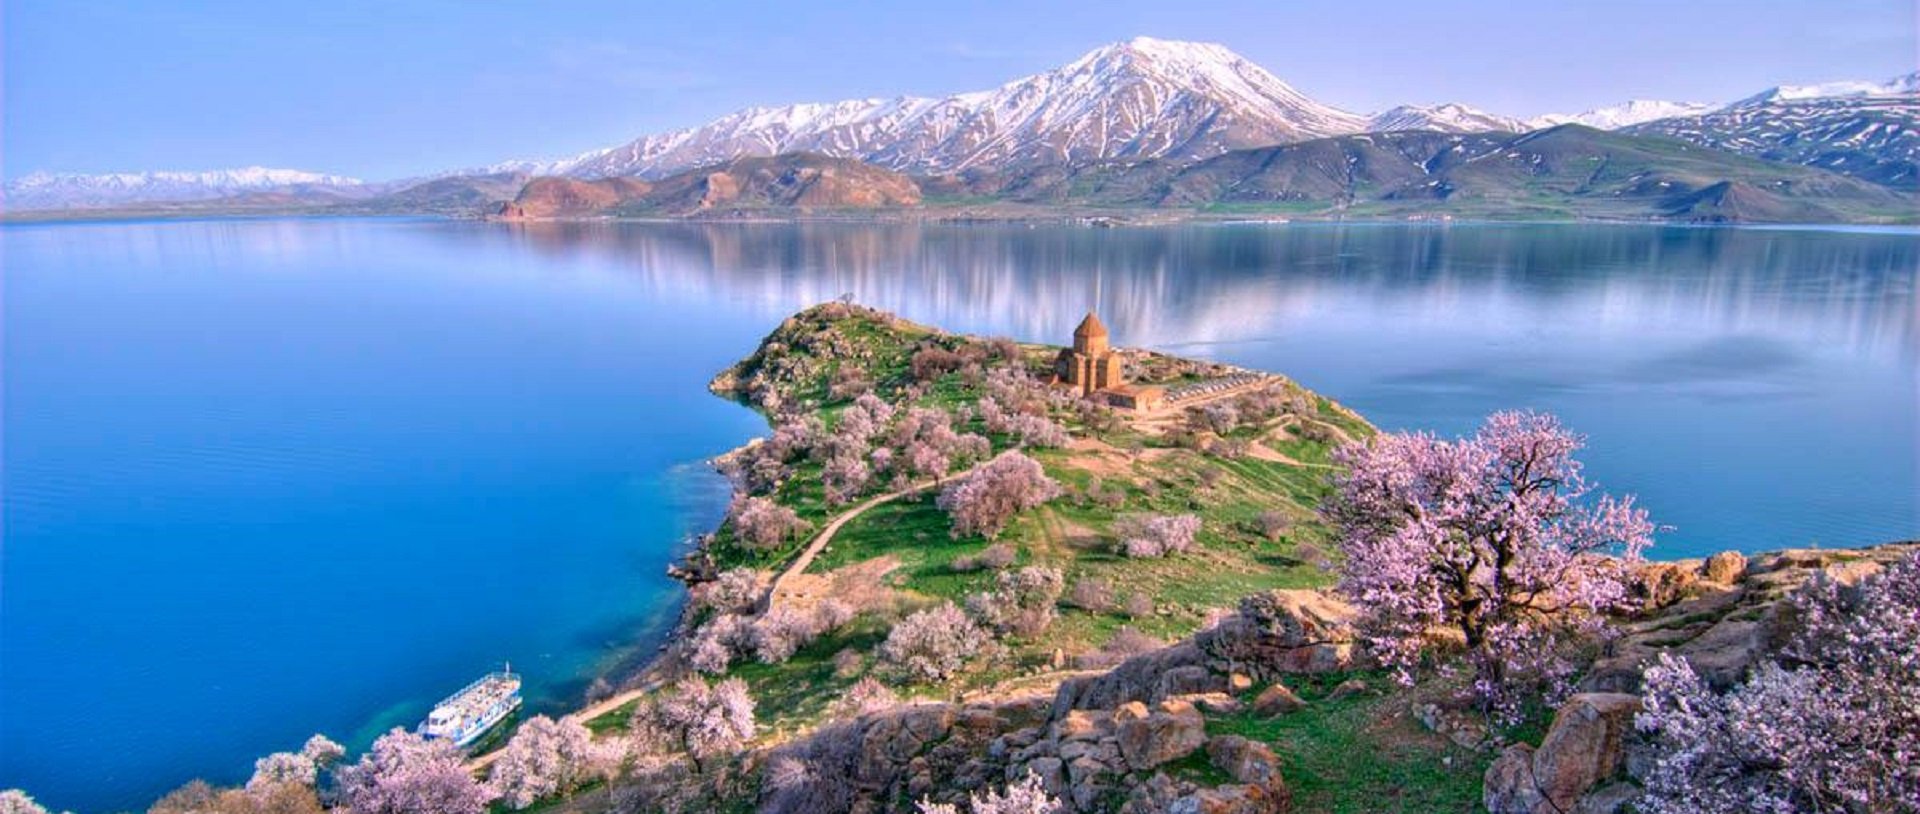 Картинки по запросу Western Armenia/ ԱՐԵՎՄՏՅԱՆ ՀԱՅԱՍՏԱՆ/